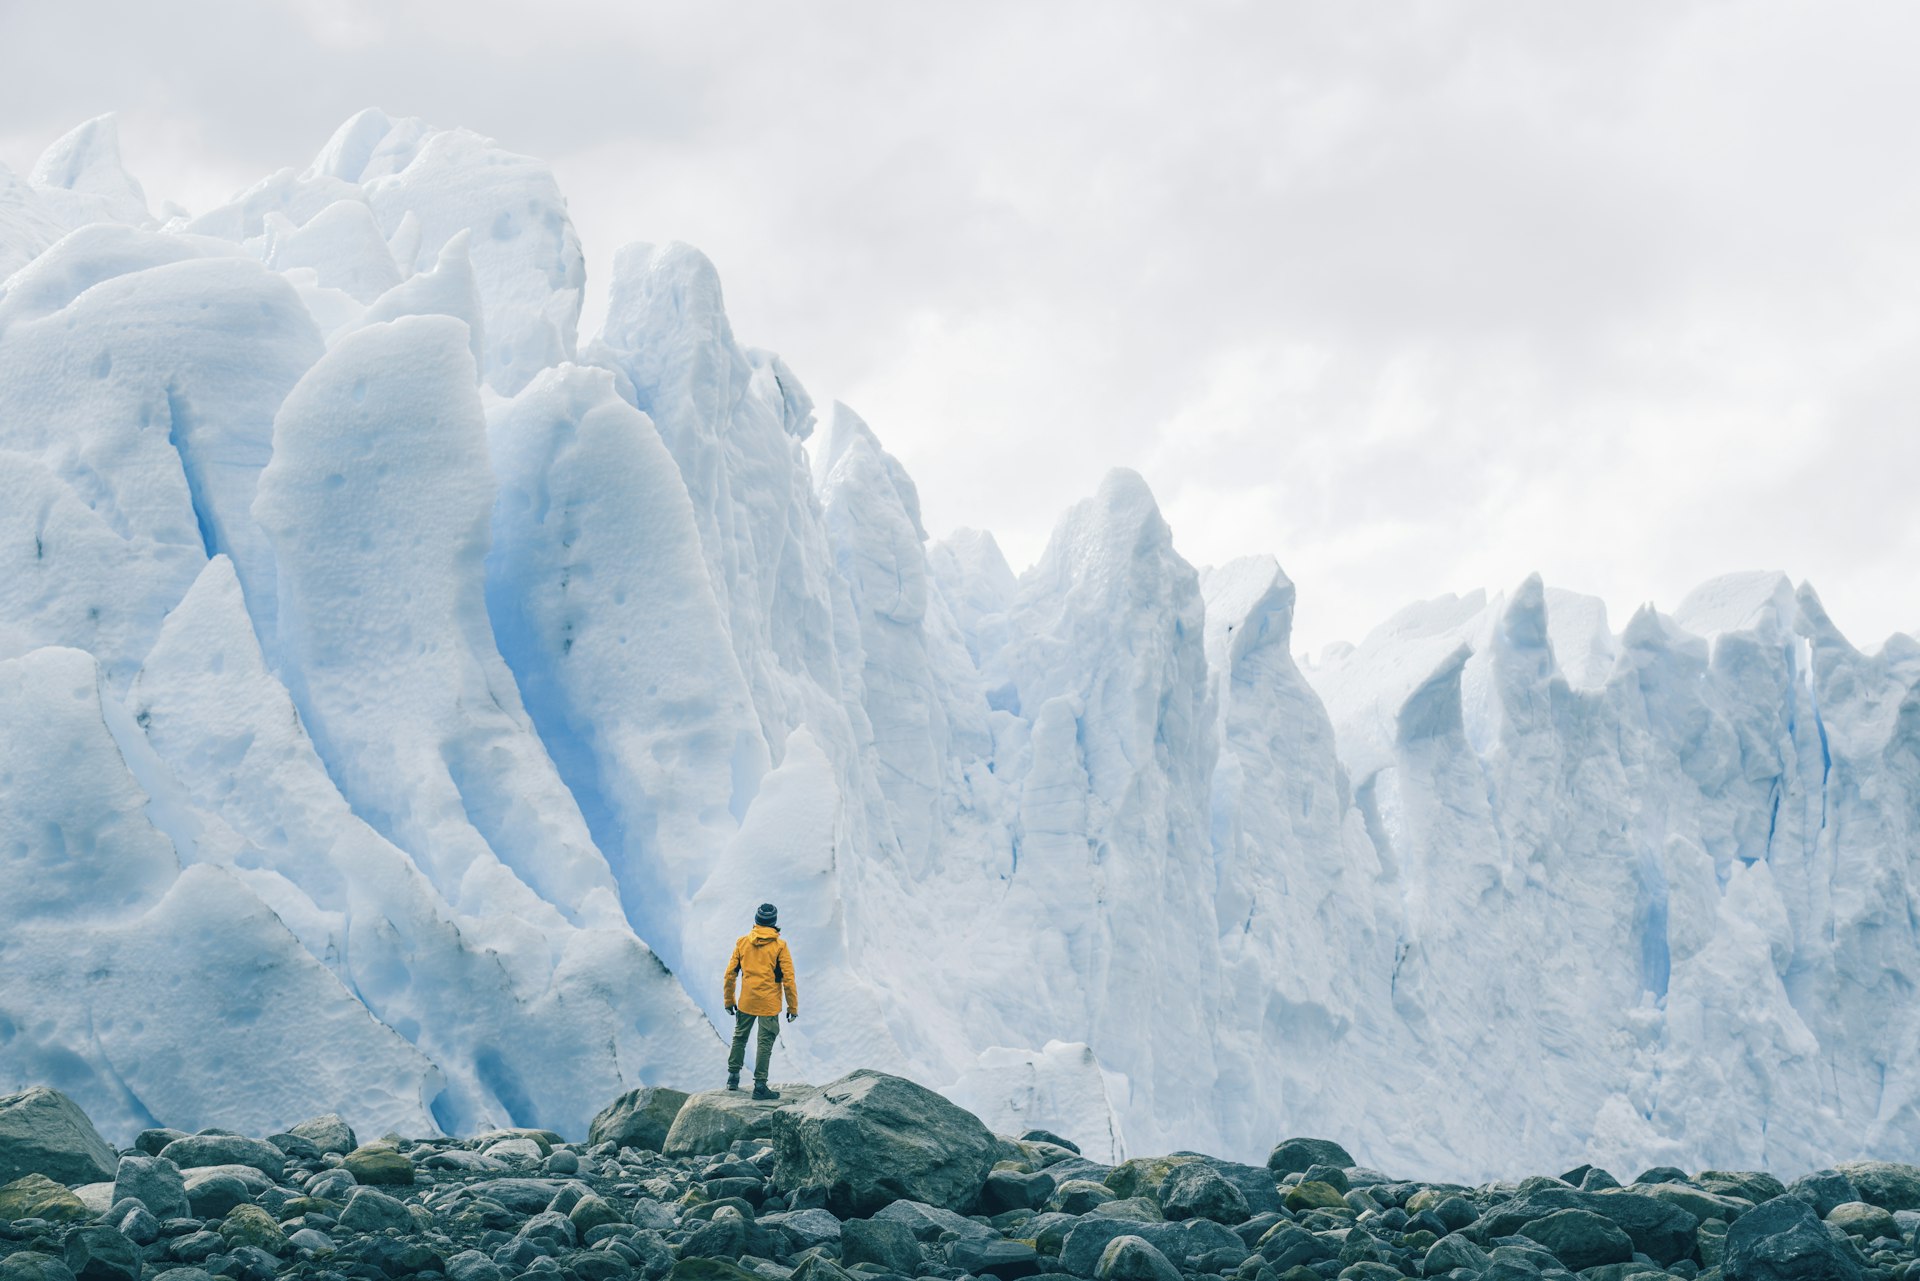 Tourist admiring the Perito Moreno glacier, Argentina